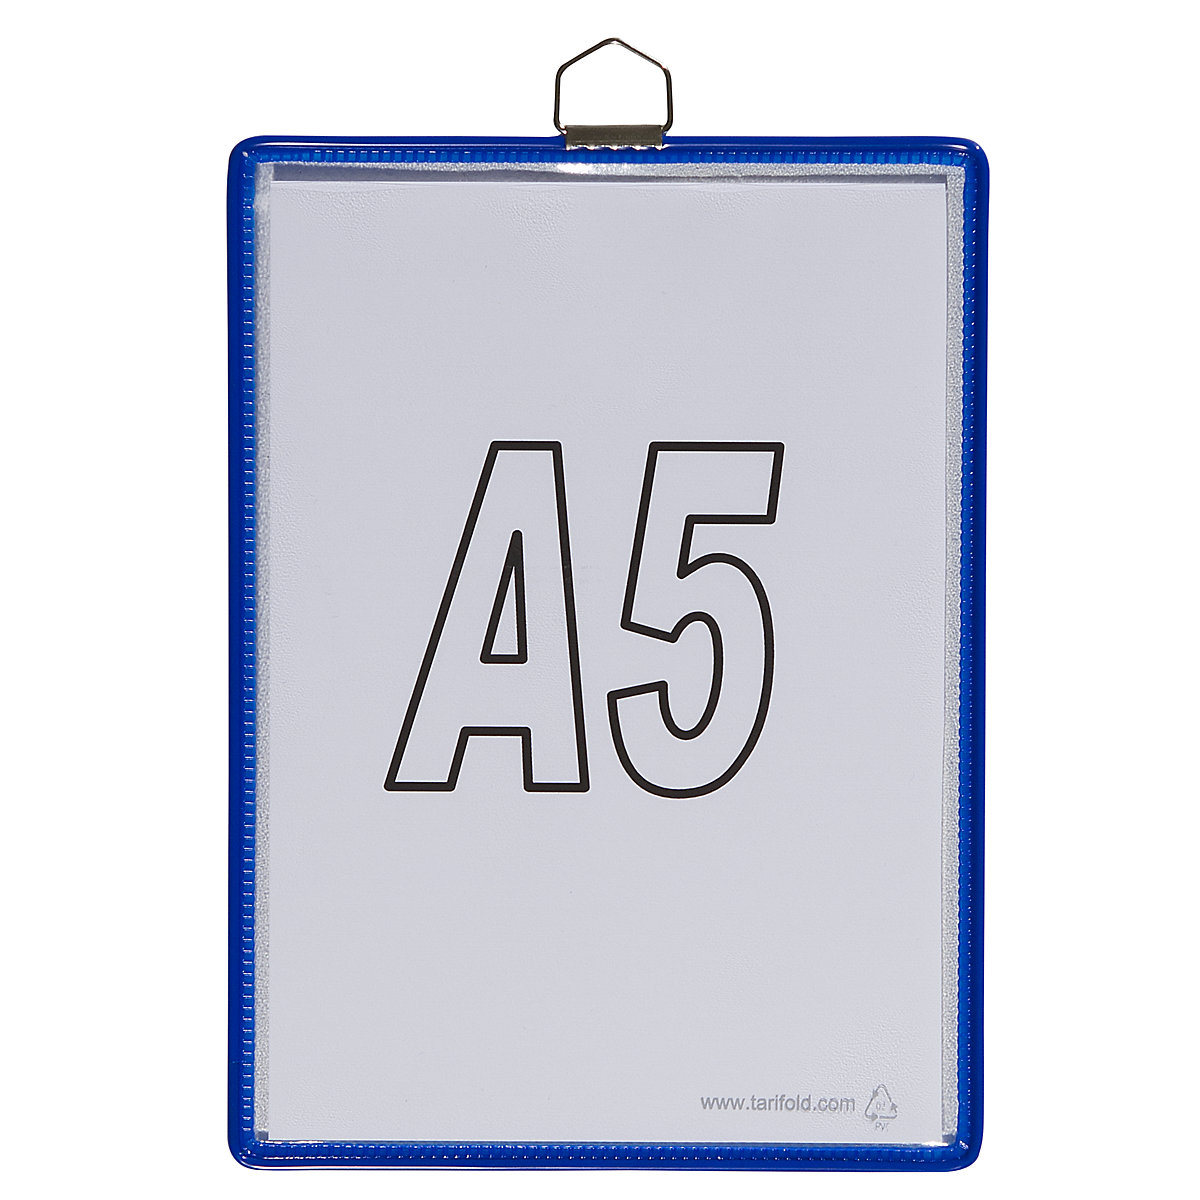 Hänge-Klarsichttasche Tarifold, für Format DIN A5, blau, VE 10 Stk-7